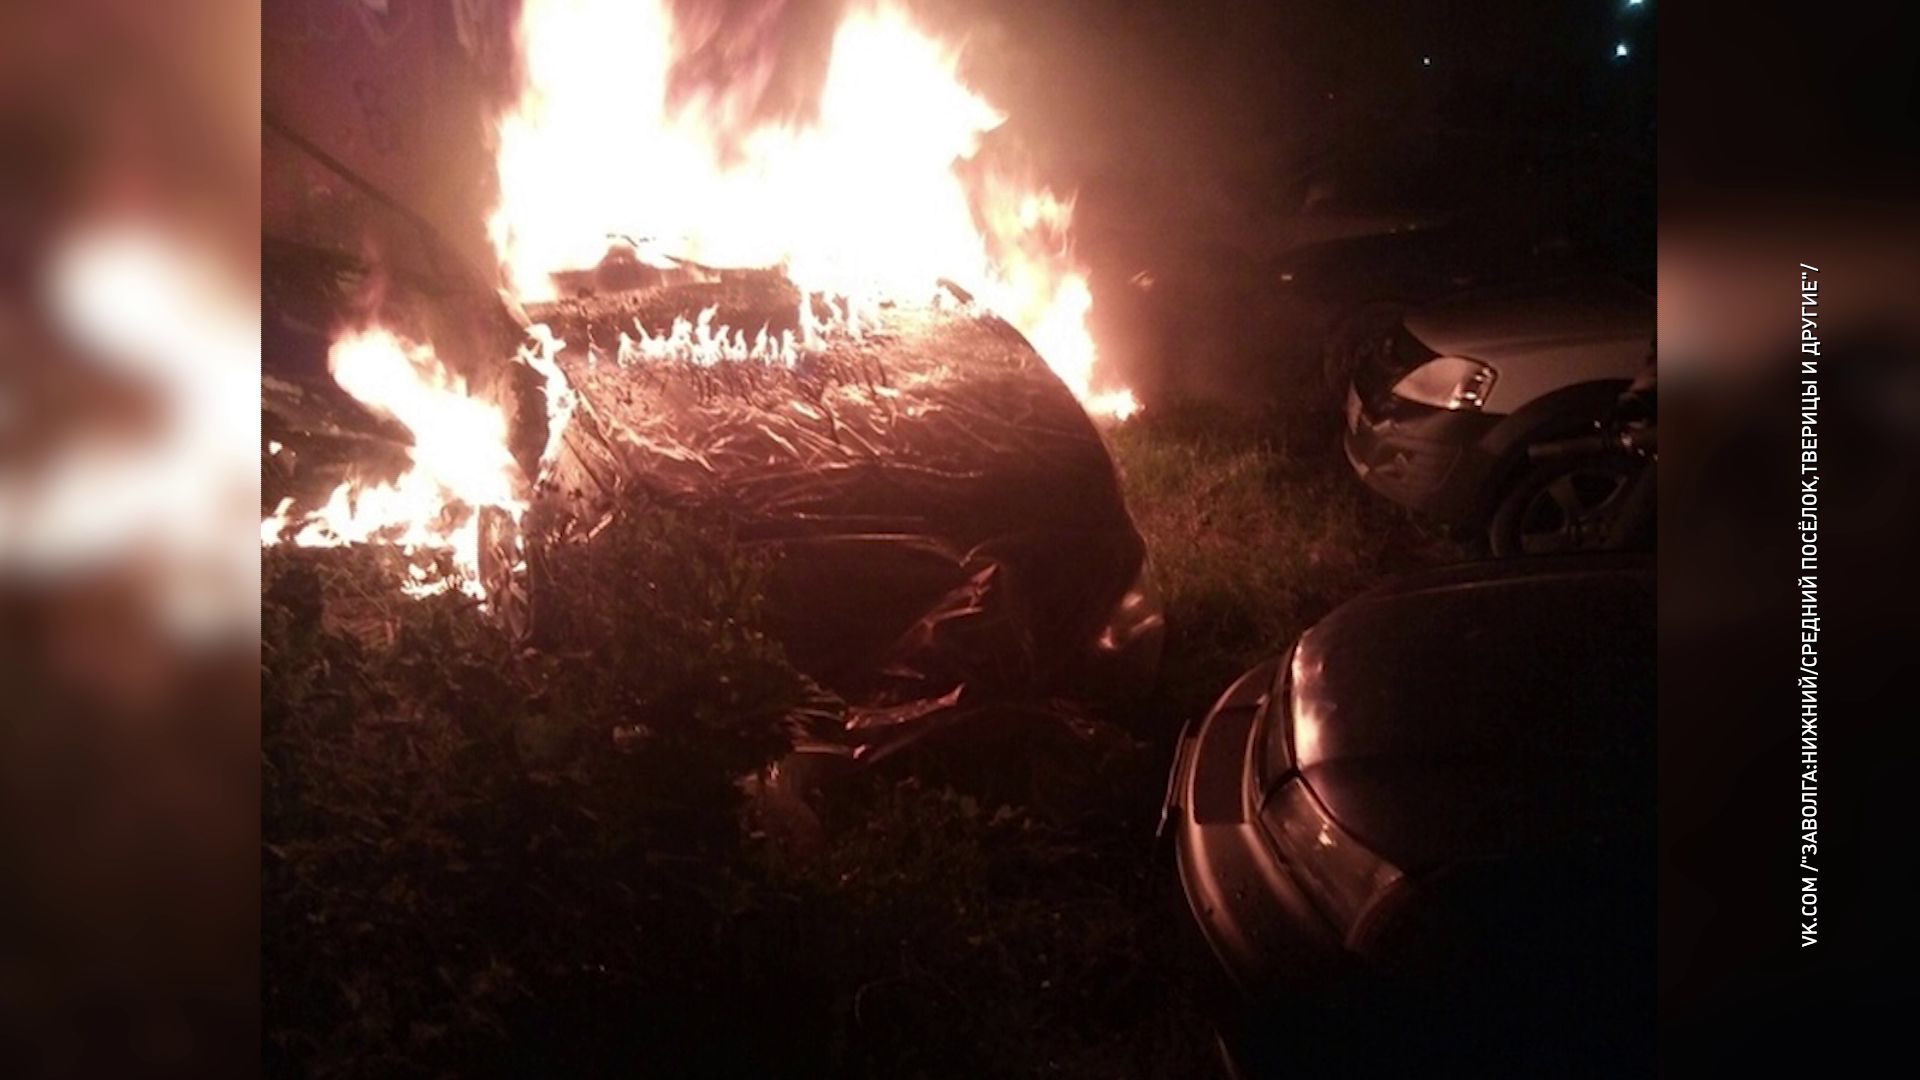 Борьба с парковкой на газоне продолжается: в Заволжском районе снова сгорел автомобиль